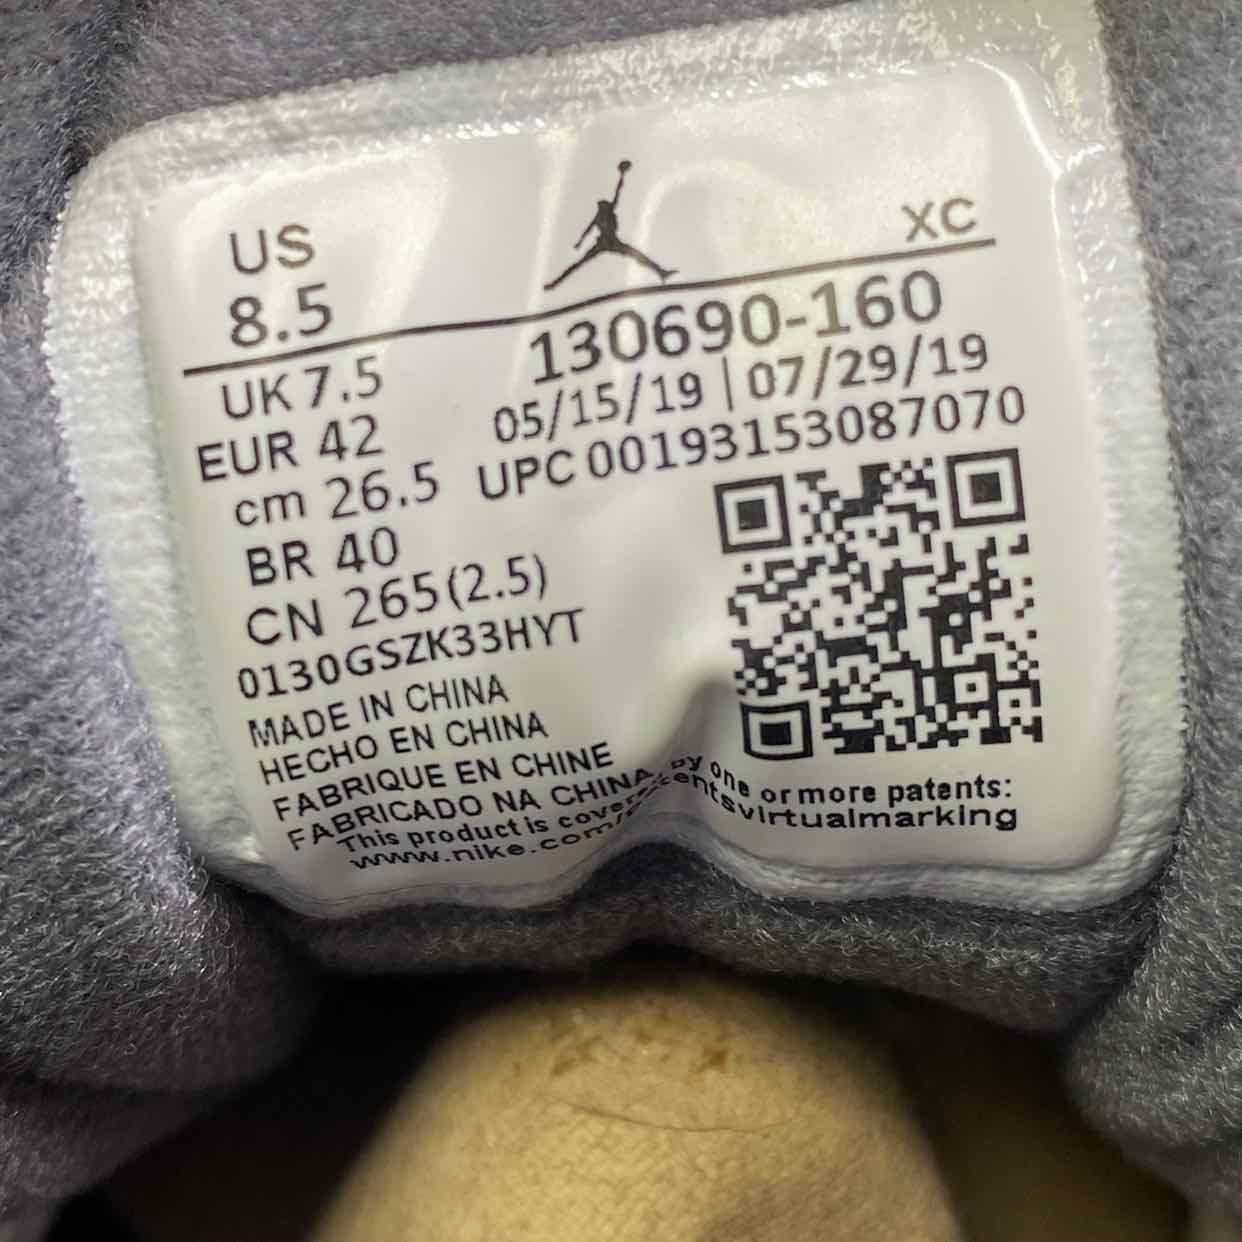 Air Jordan 12 Retro &quot;Dark Grey&quot; 2019 New Size 8.5